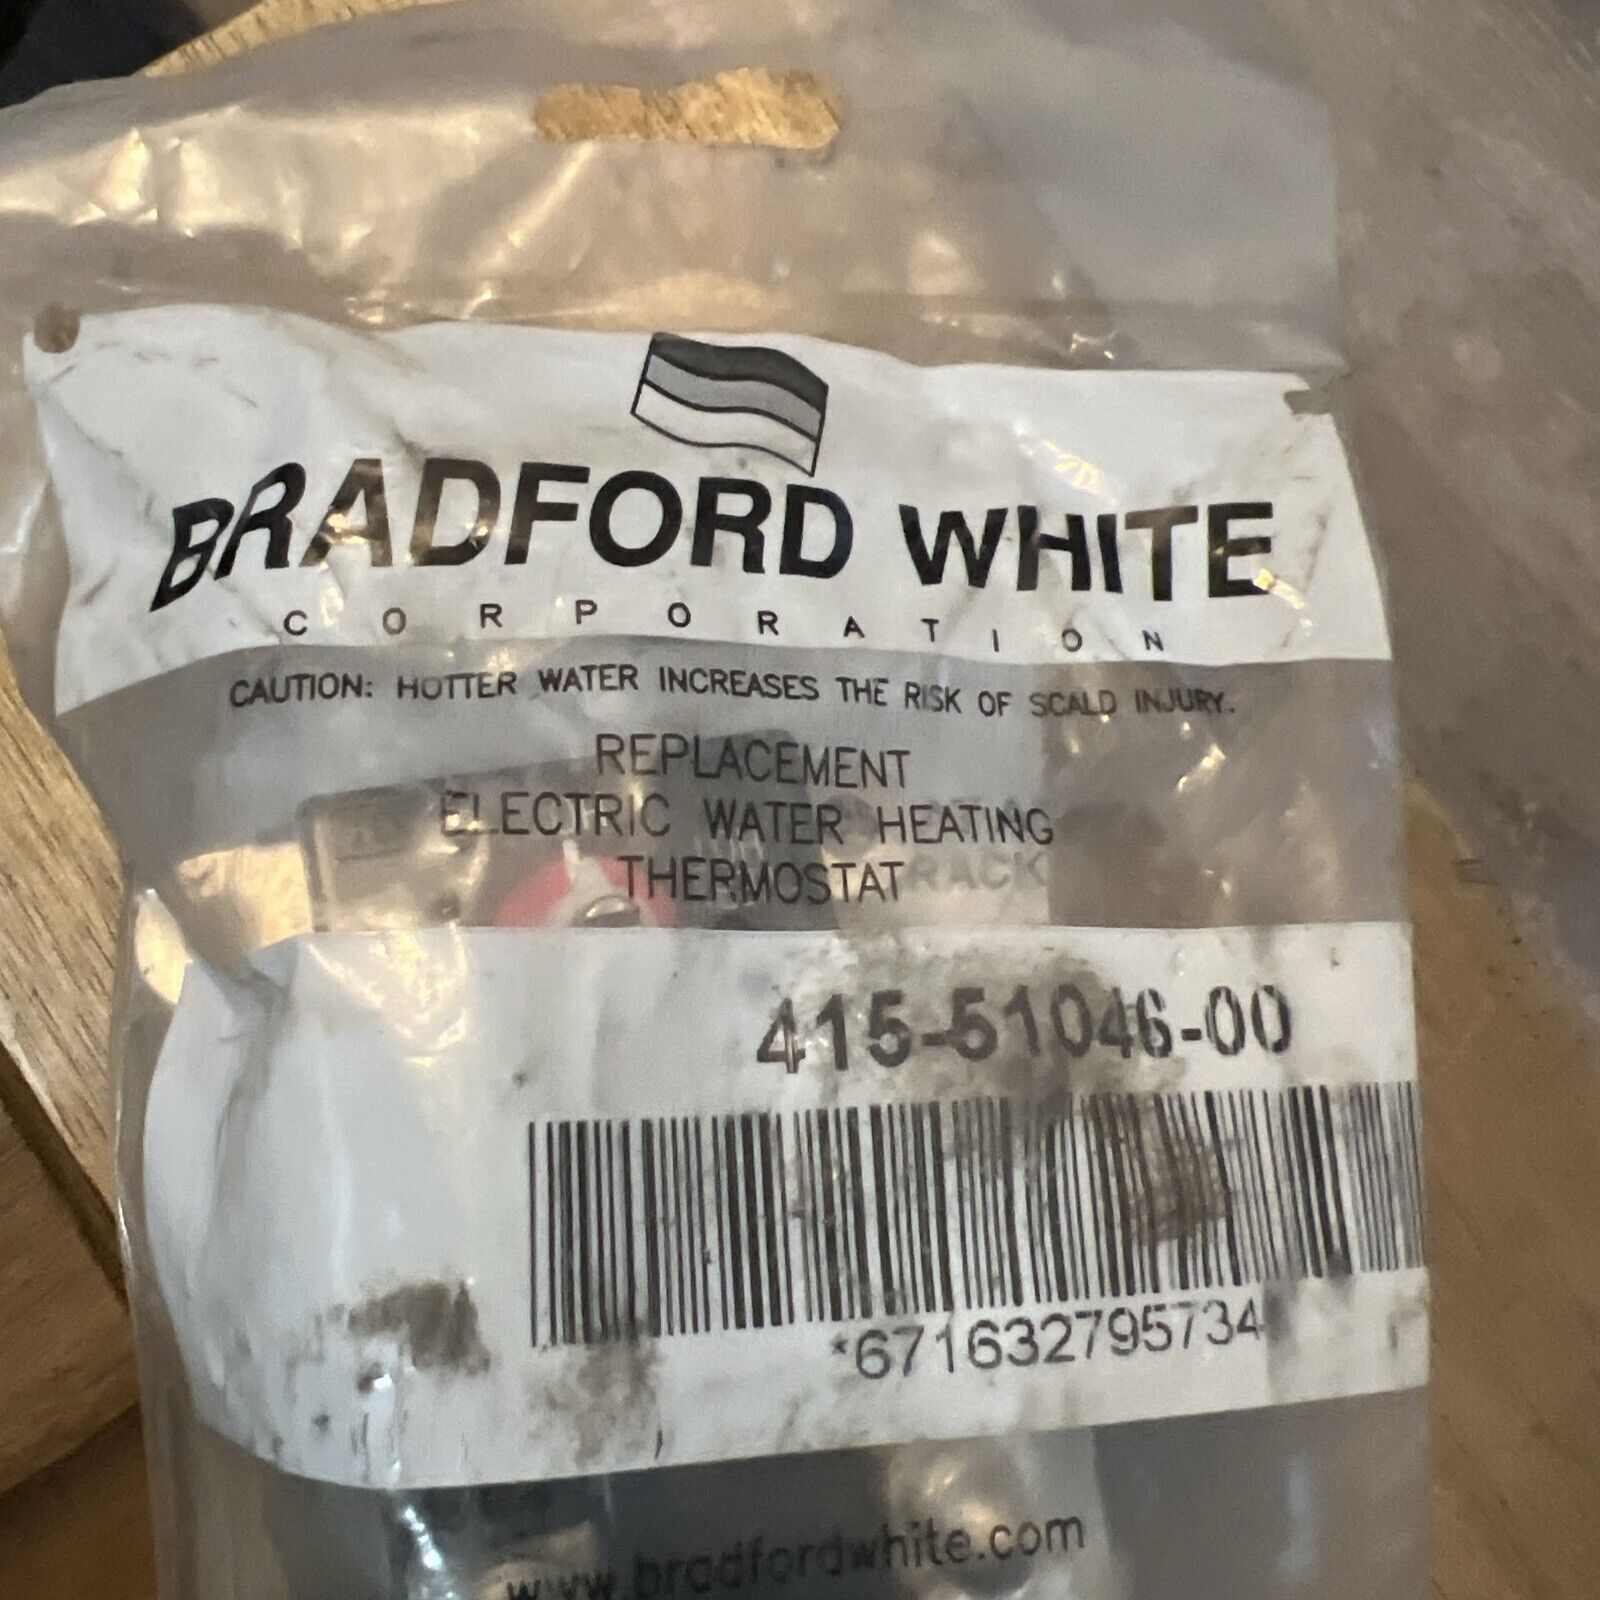 Bradford White 240V Upper & Lower Thermostats 265-51046-00 (Sealed)